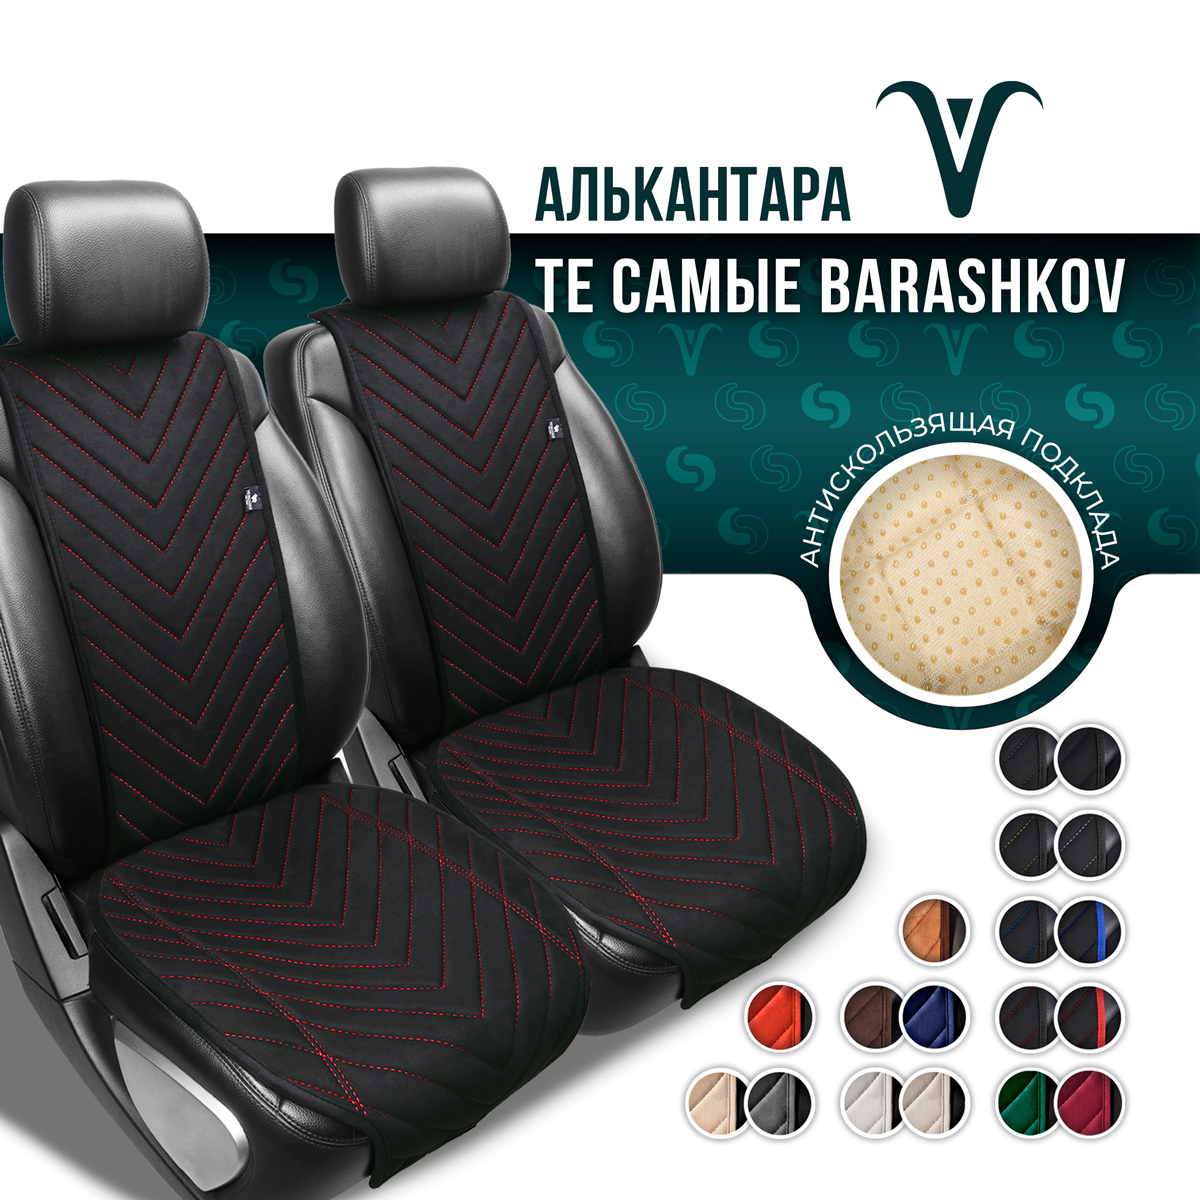 Полный комплект накидок Barashkov из алькантары на сиденья автомобиля. Модель M SV